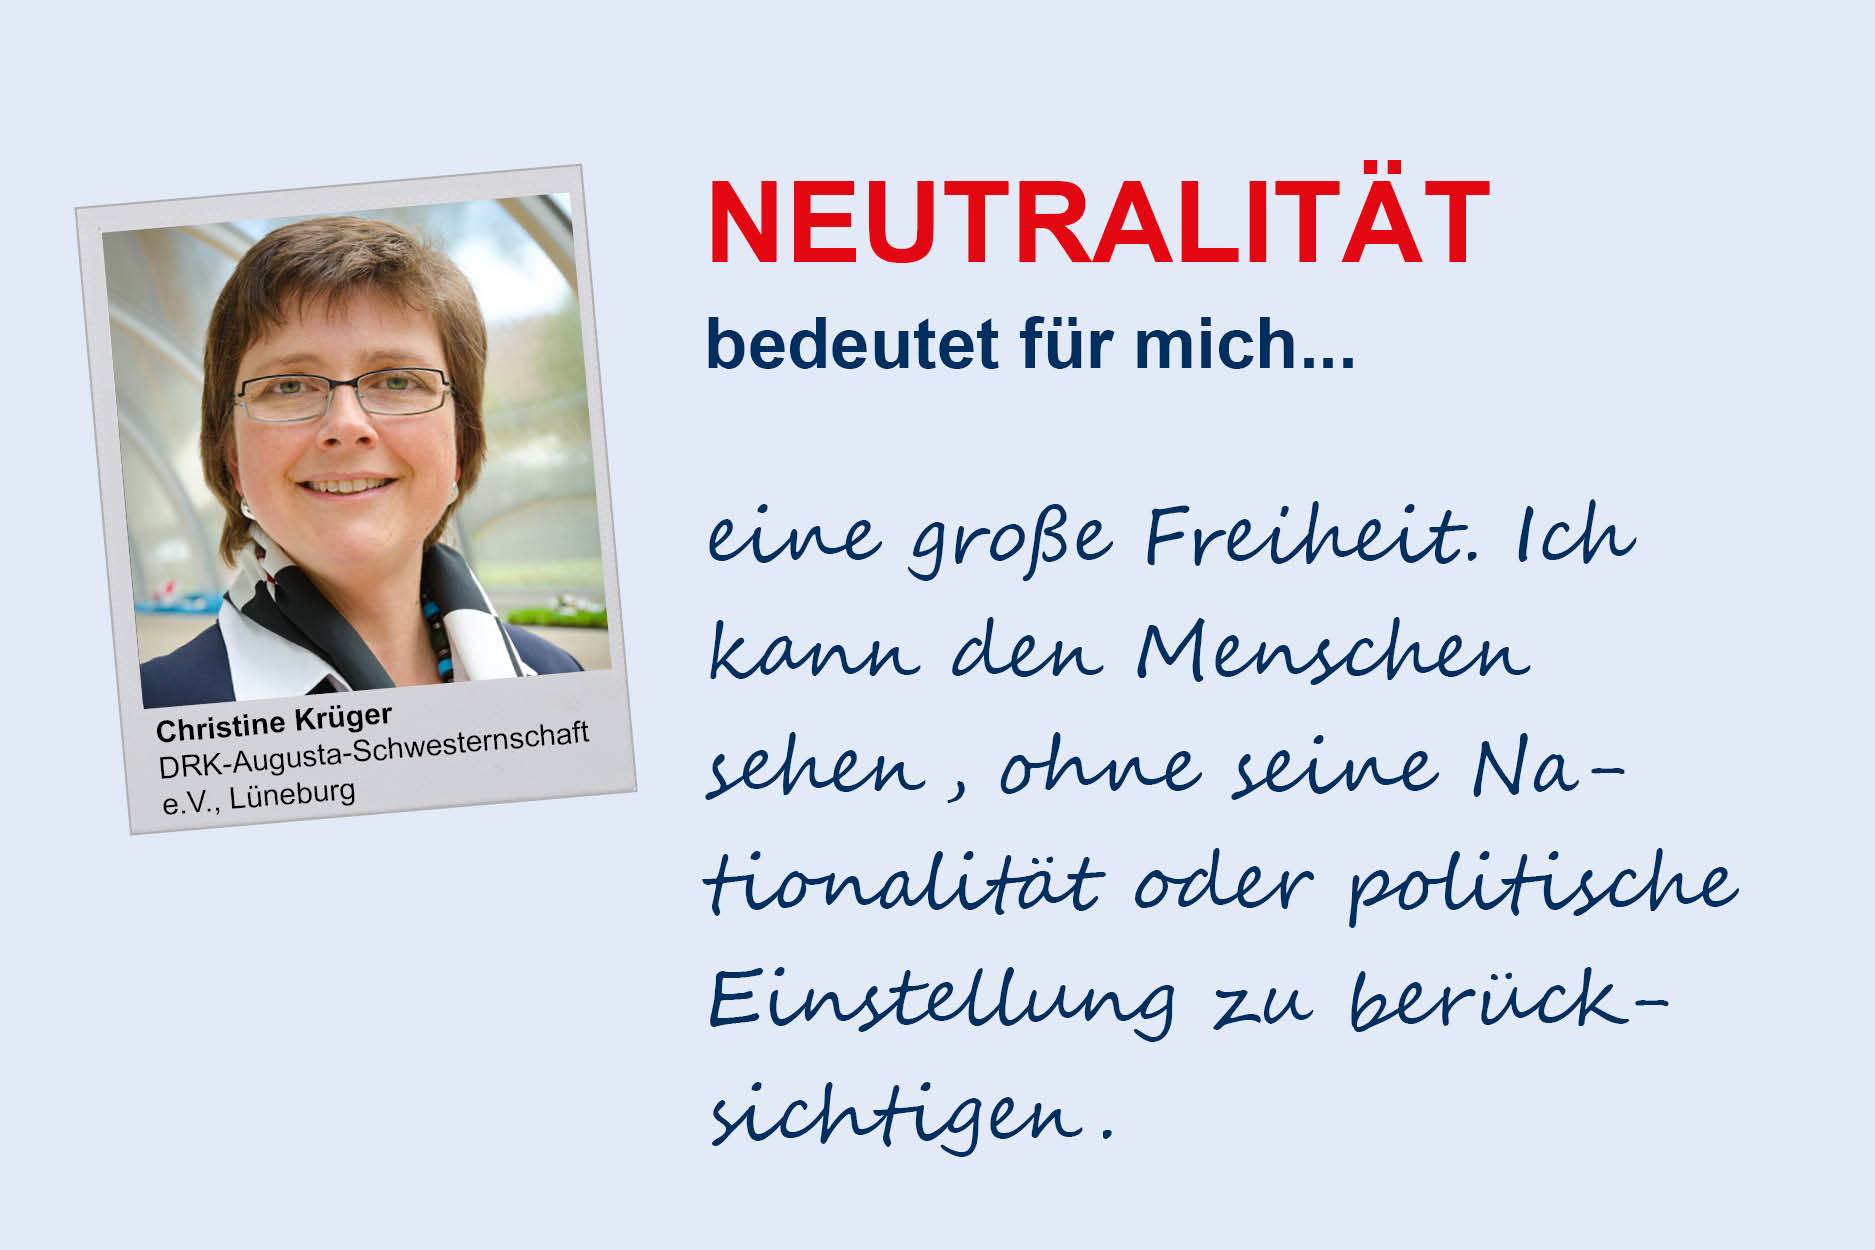 Christine Krüger, DRK Augusta-Schwesternschaft e.V./Lüneburg
**Neutralität**